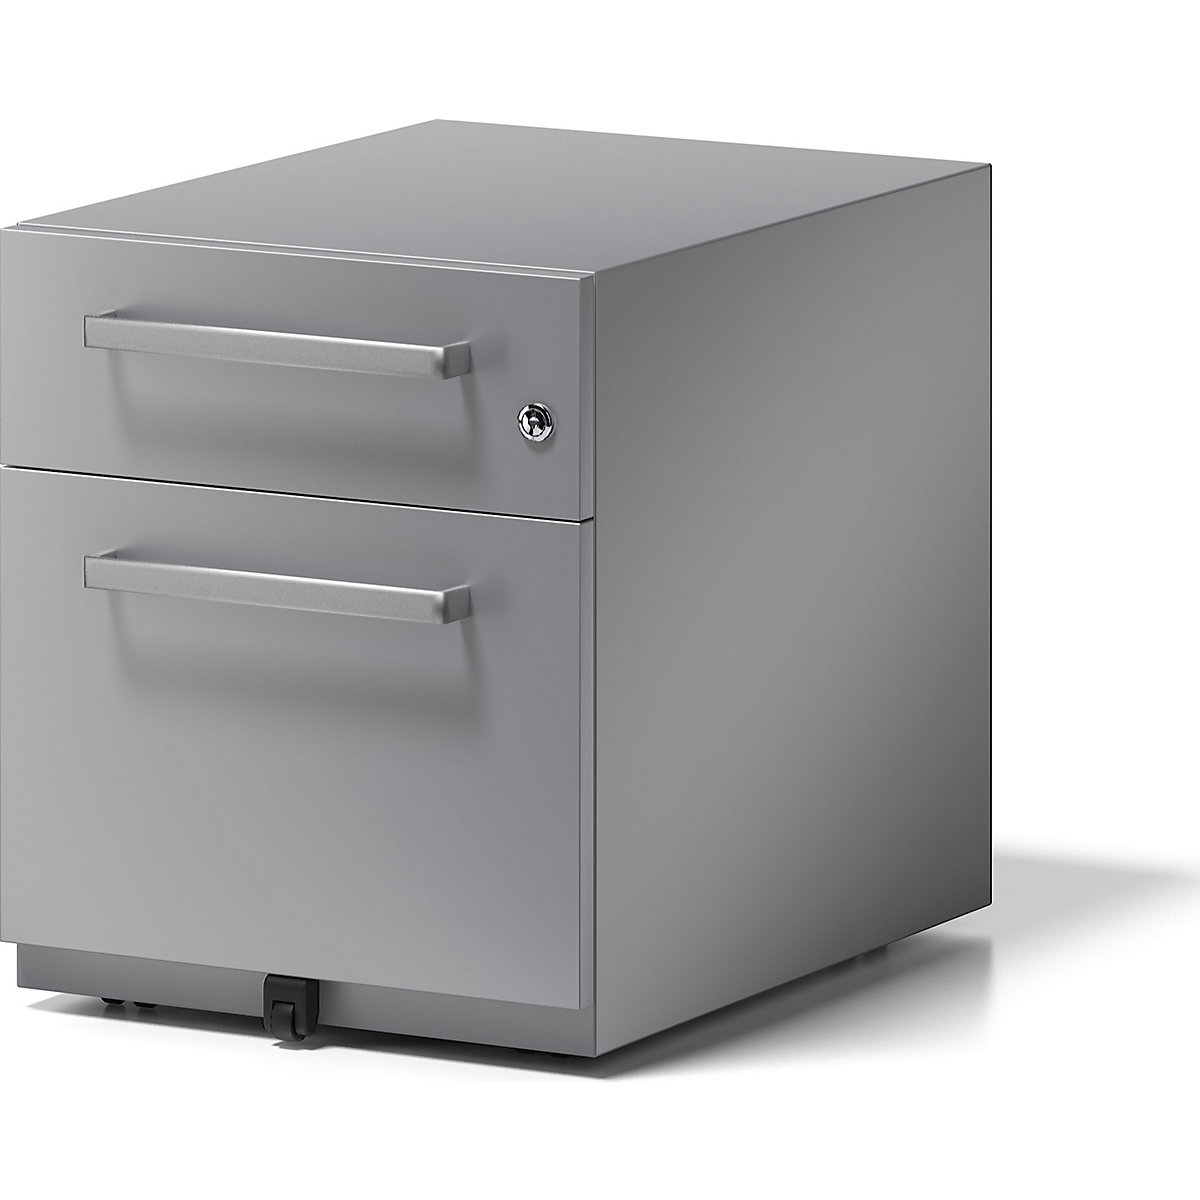 Buck rodante Note™ con 1 archivador colgante y 1 cajón universal – BISLEY, H x A x P 495 x 420 x 565 mm, con asa, plateado